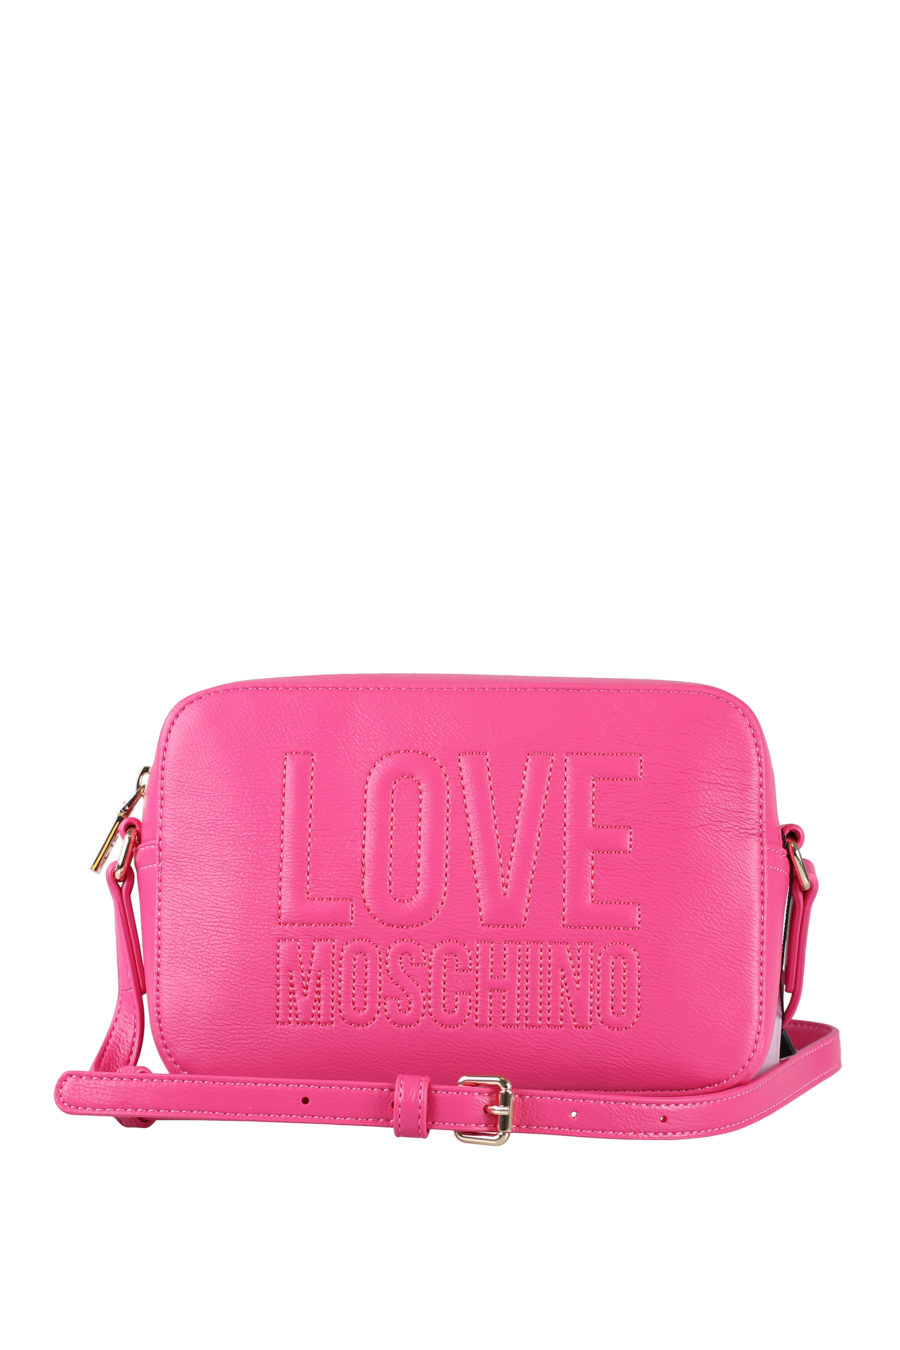 Bolso rosa "camera bag" con logo bordado - IMG 1557